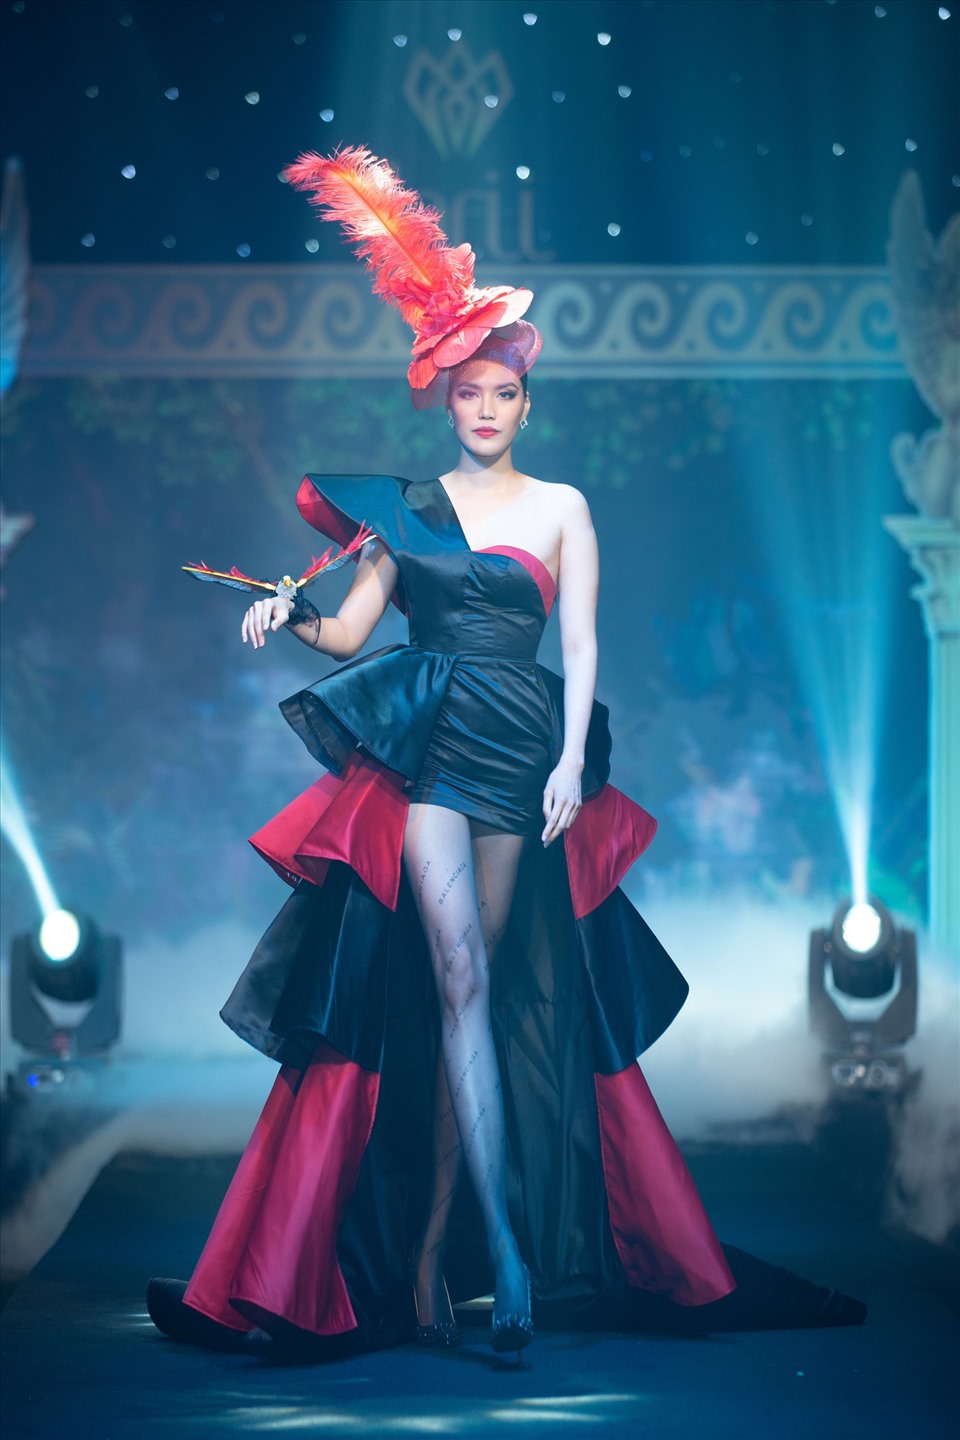 NTK Tạ Linh Nhân mong chương trình được tổ chức hằng năm với mong muốn tạo ra những xu hướng thời trang mới cho trẻ em Việt Nam, bắt kịp xu hướng thời trang quốc tế.